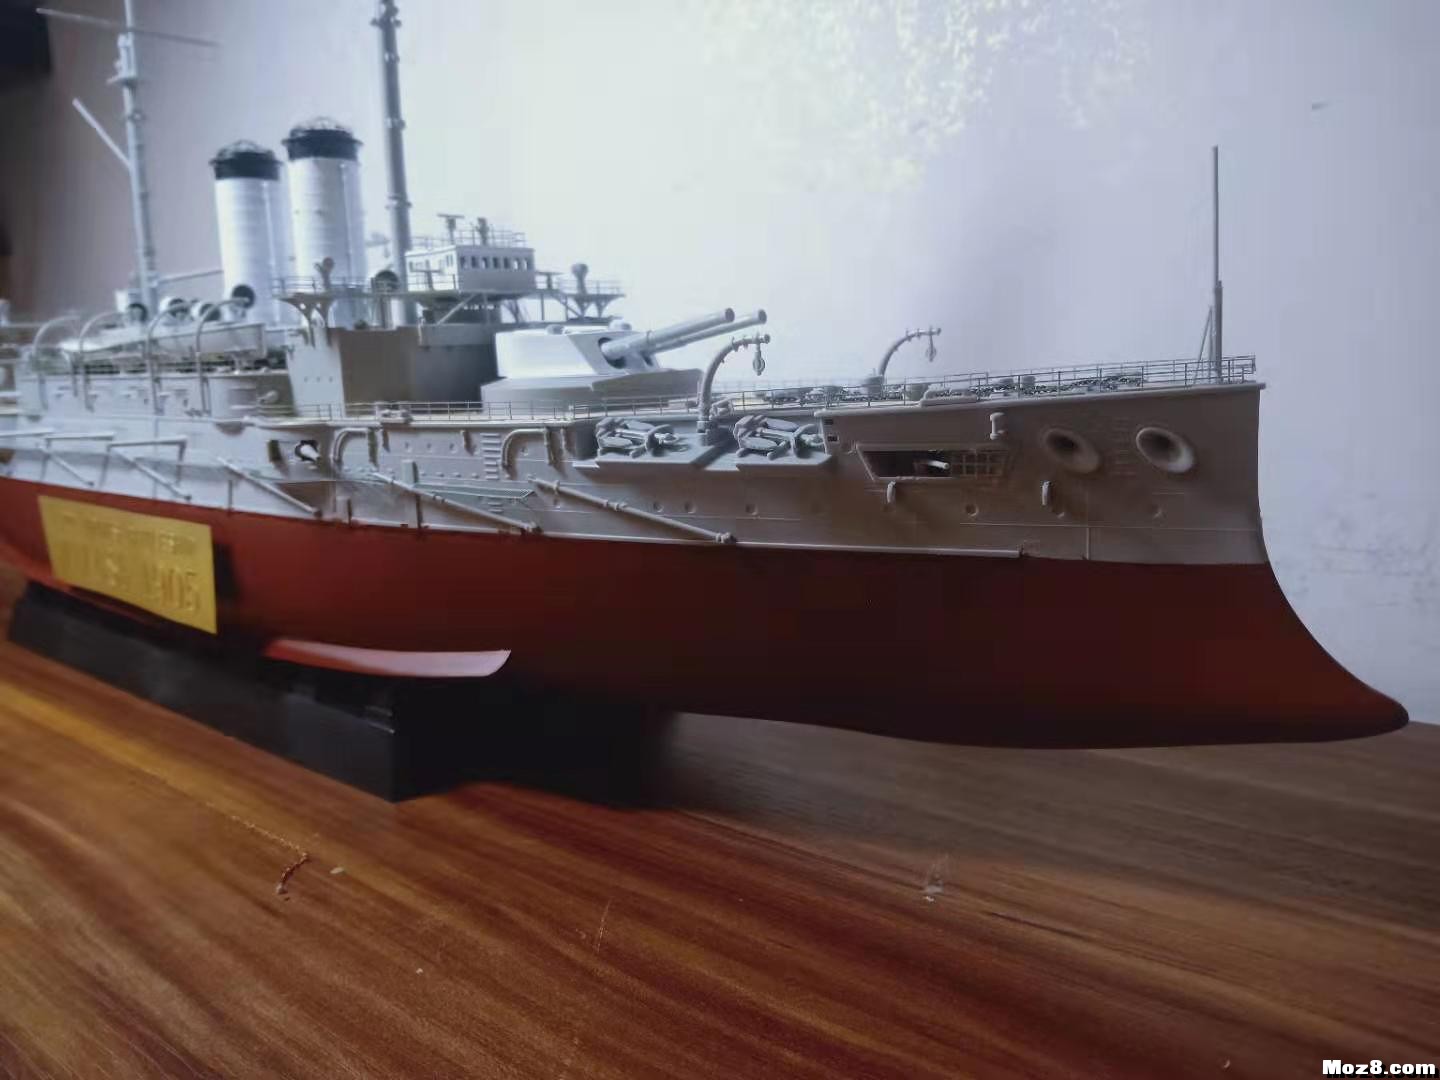 1/200模型船 手工轮船模型,轮船的模型 作者:沙发上的土豆 5038 